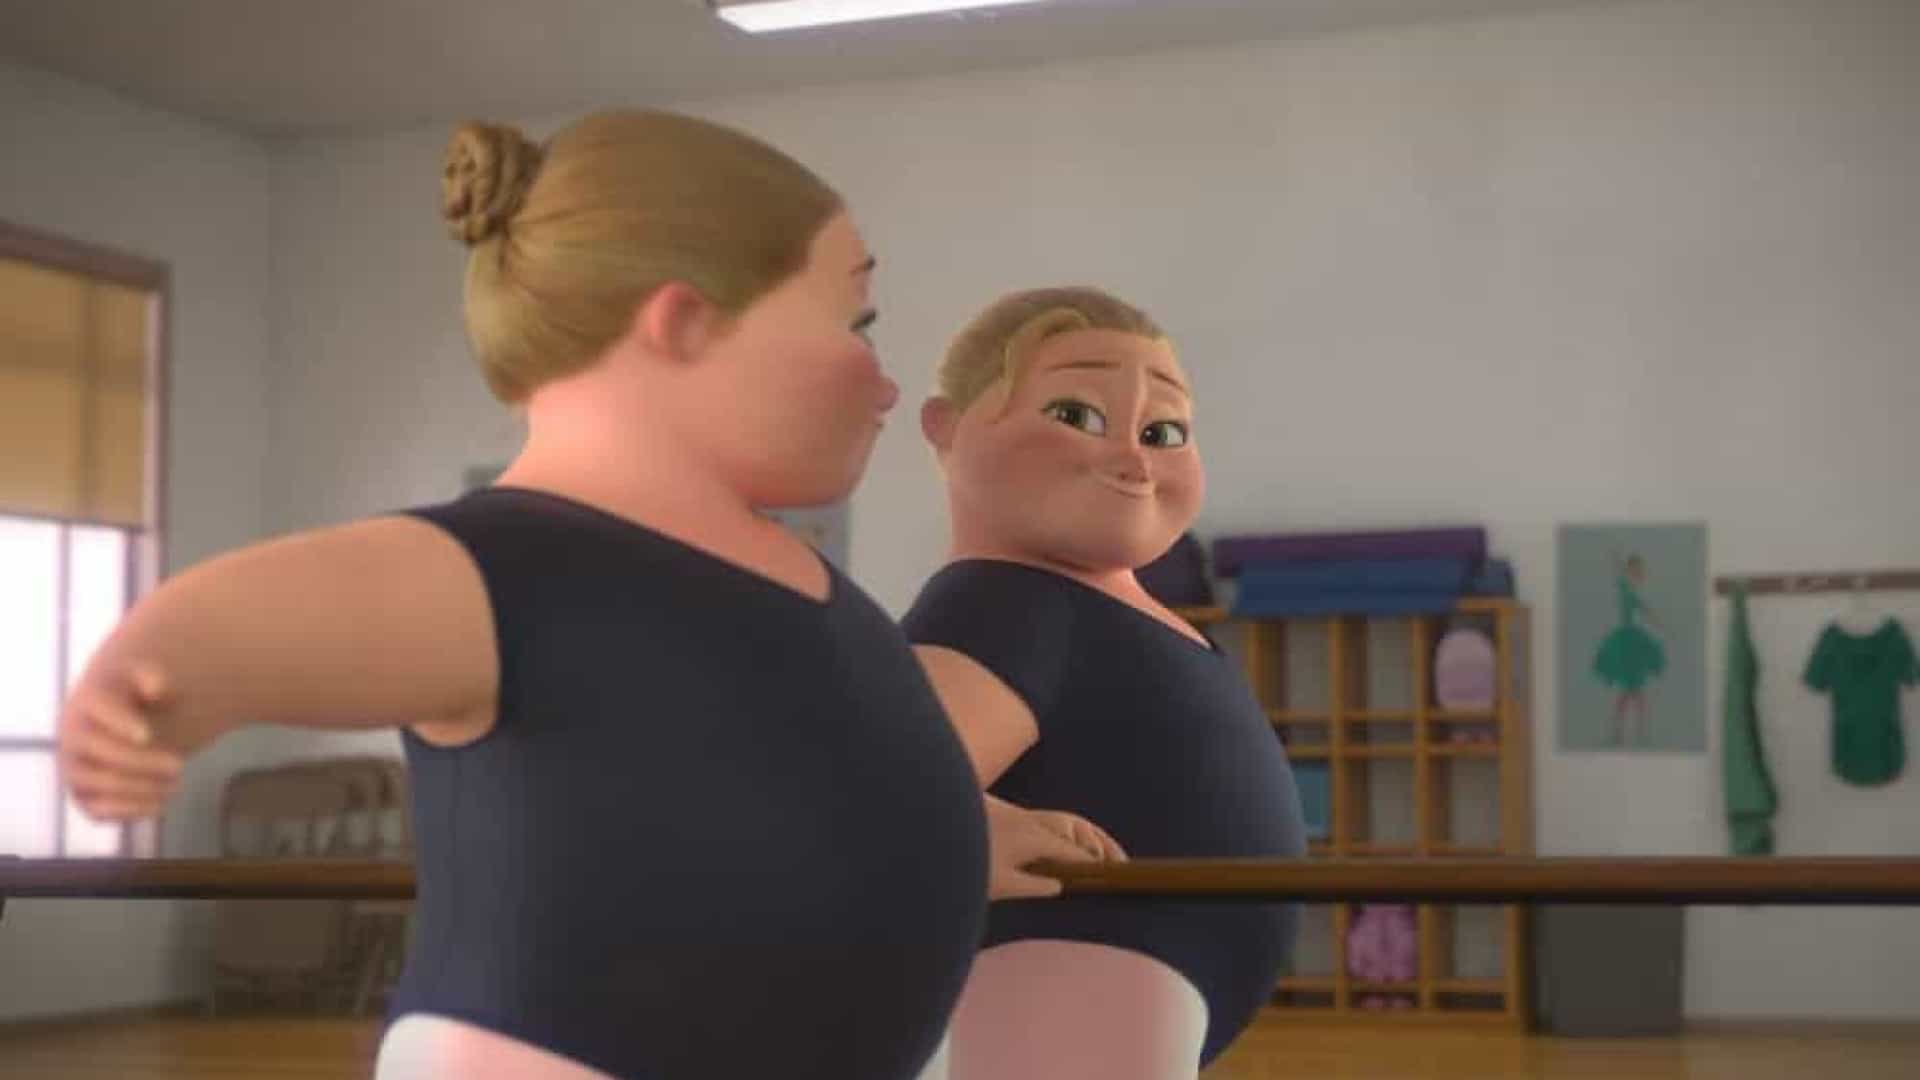 asomadetodosafetos.com - Disney lança primeira animação com protagonista gorda: "Representatividade"